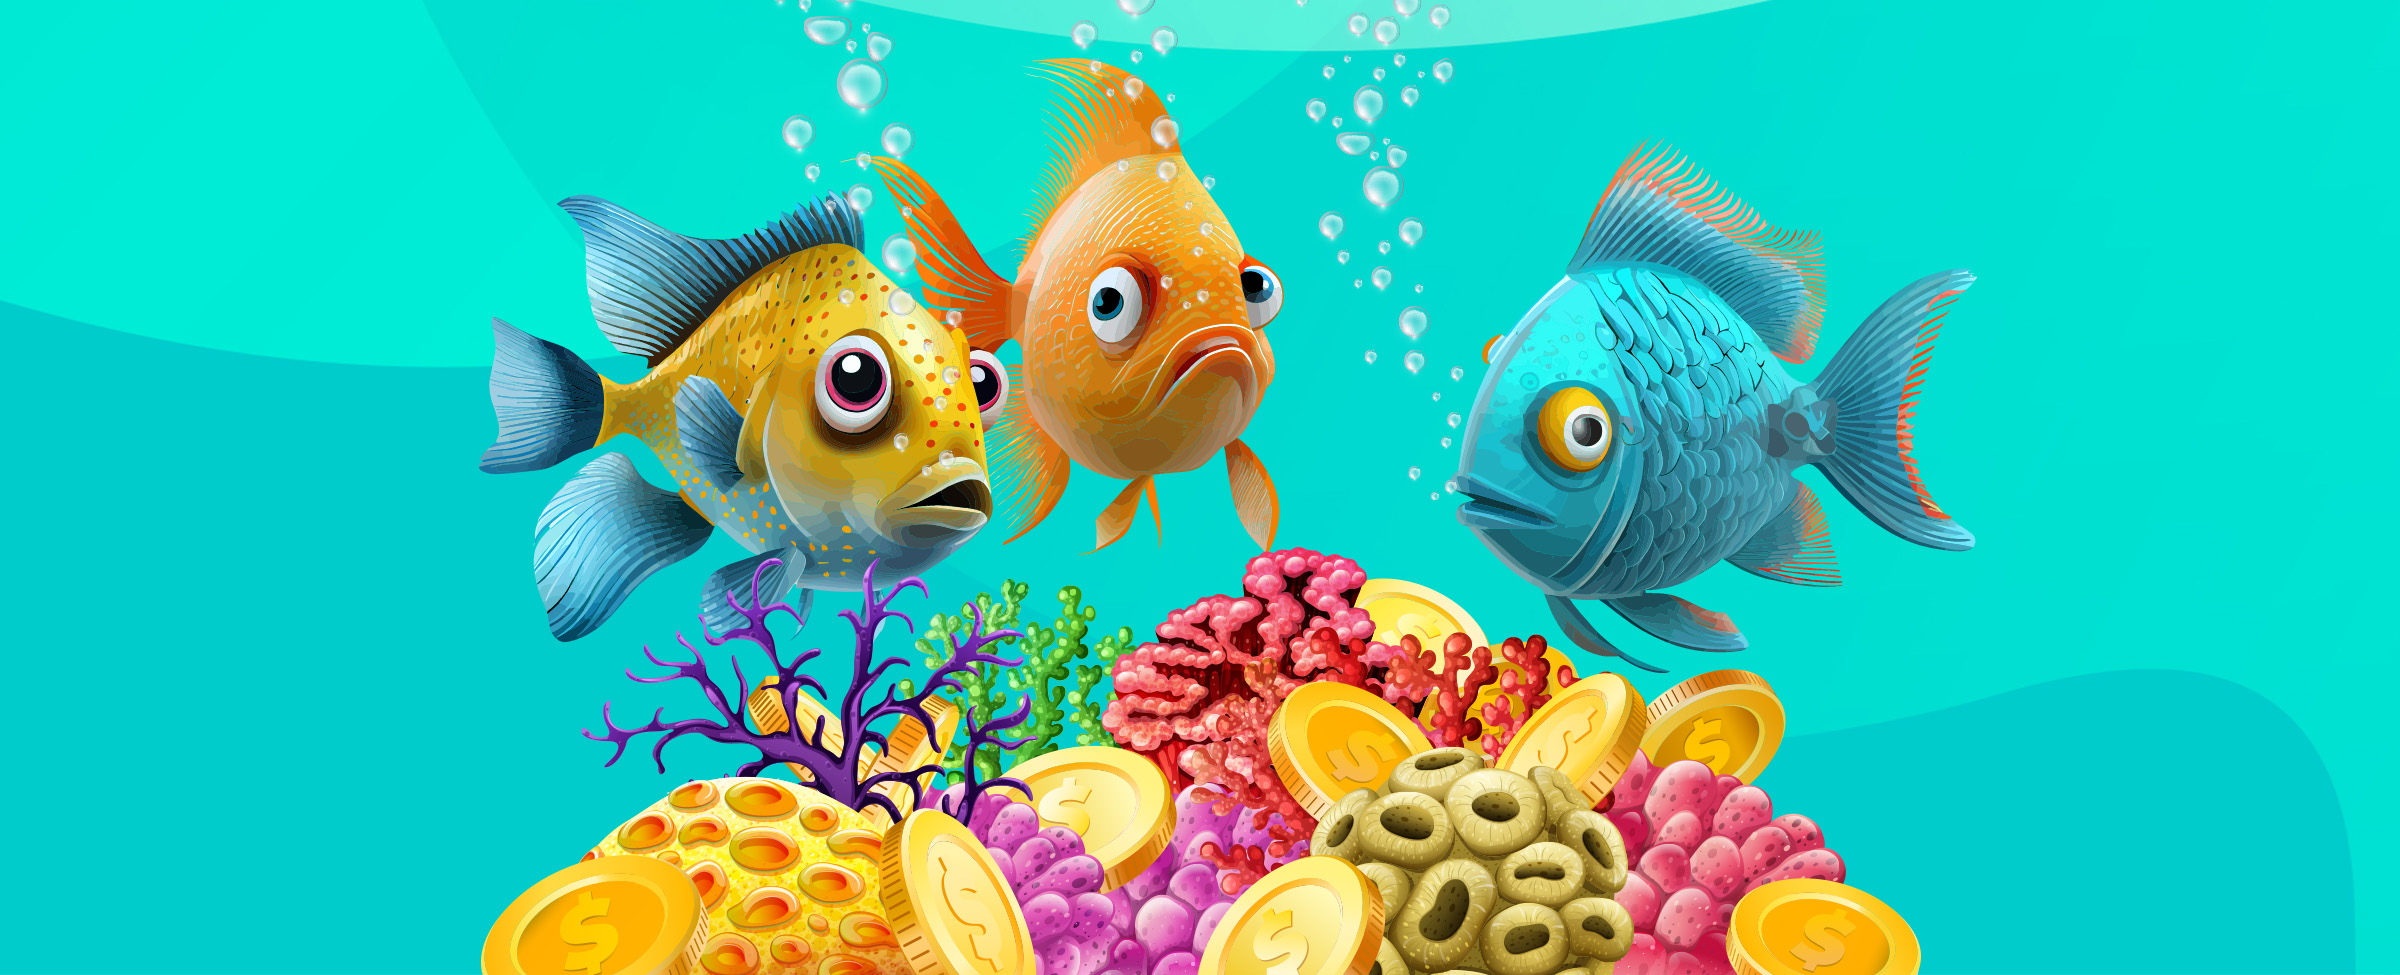 Three large, animated goldfish swim above bright coral in an aqua colored aquarium.